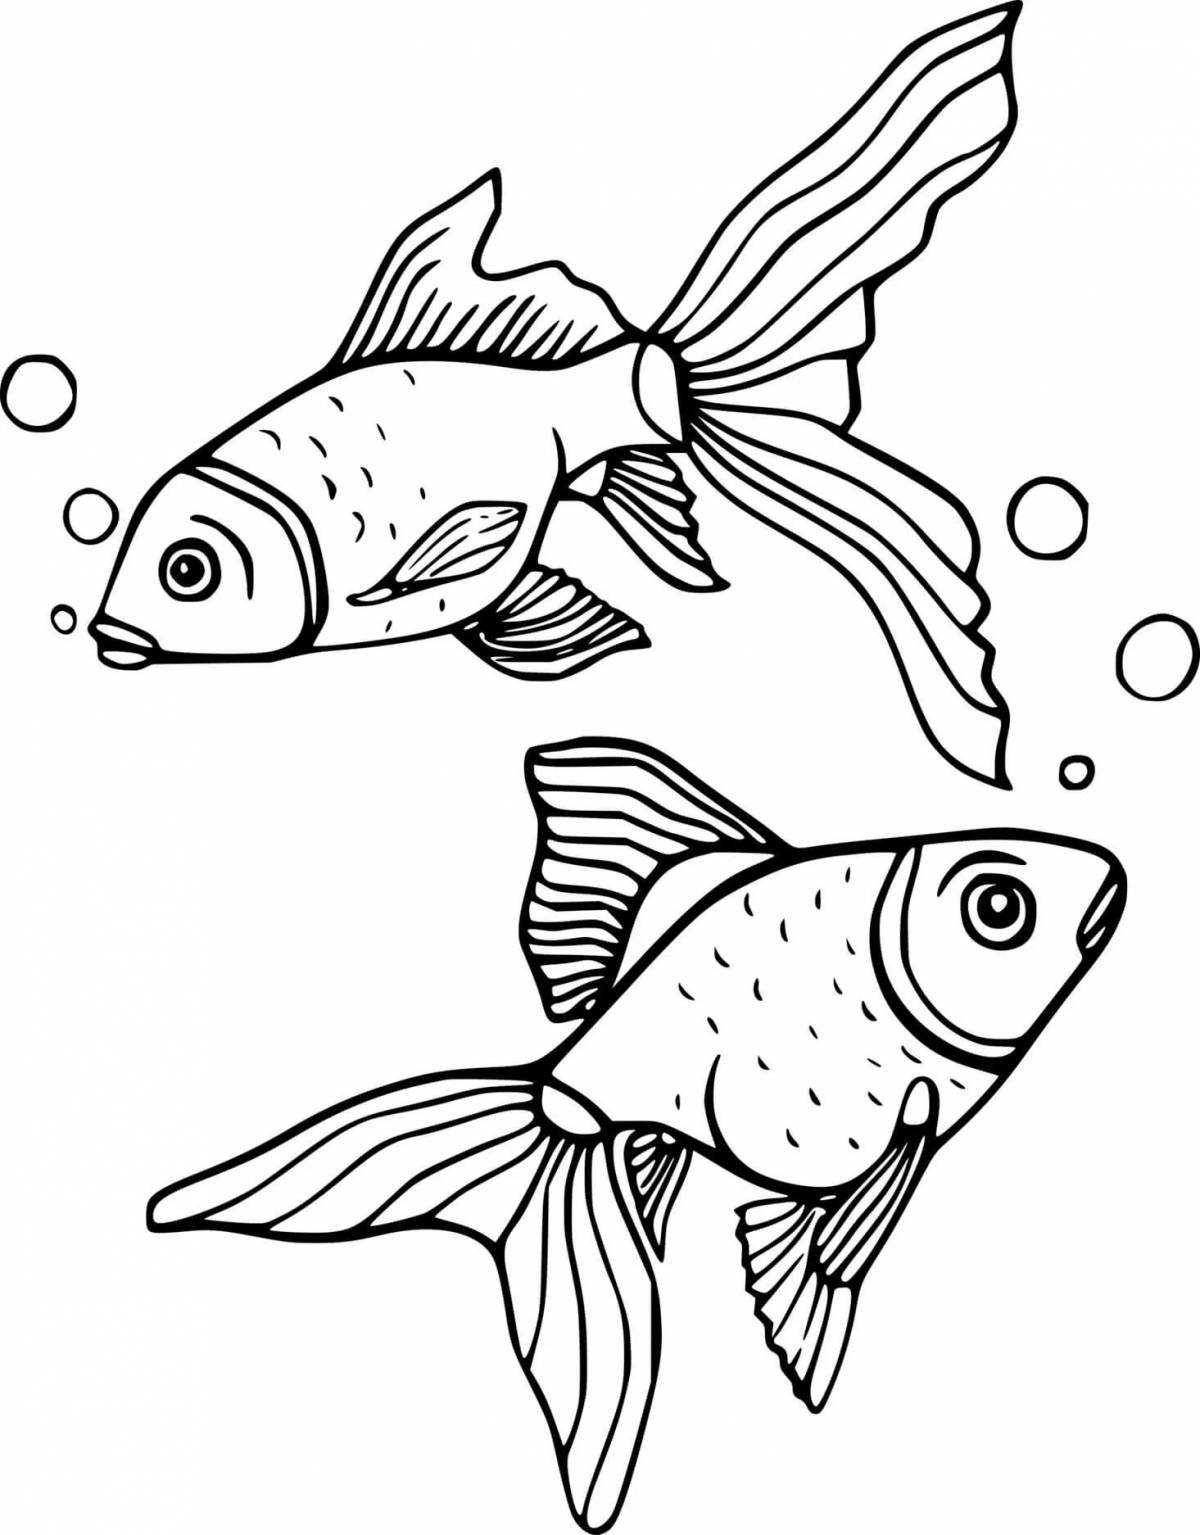 Страница раскраски с замысловатым рисунком рыбы